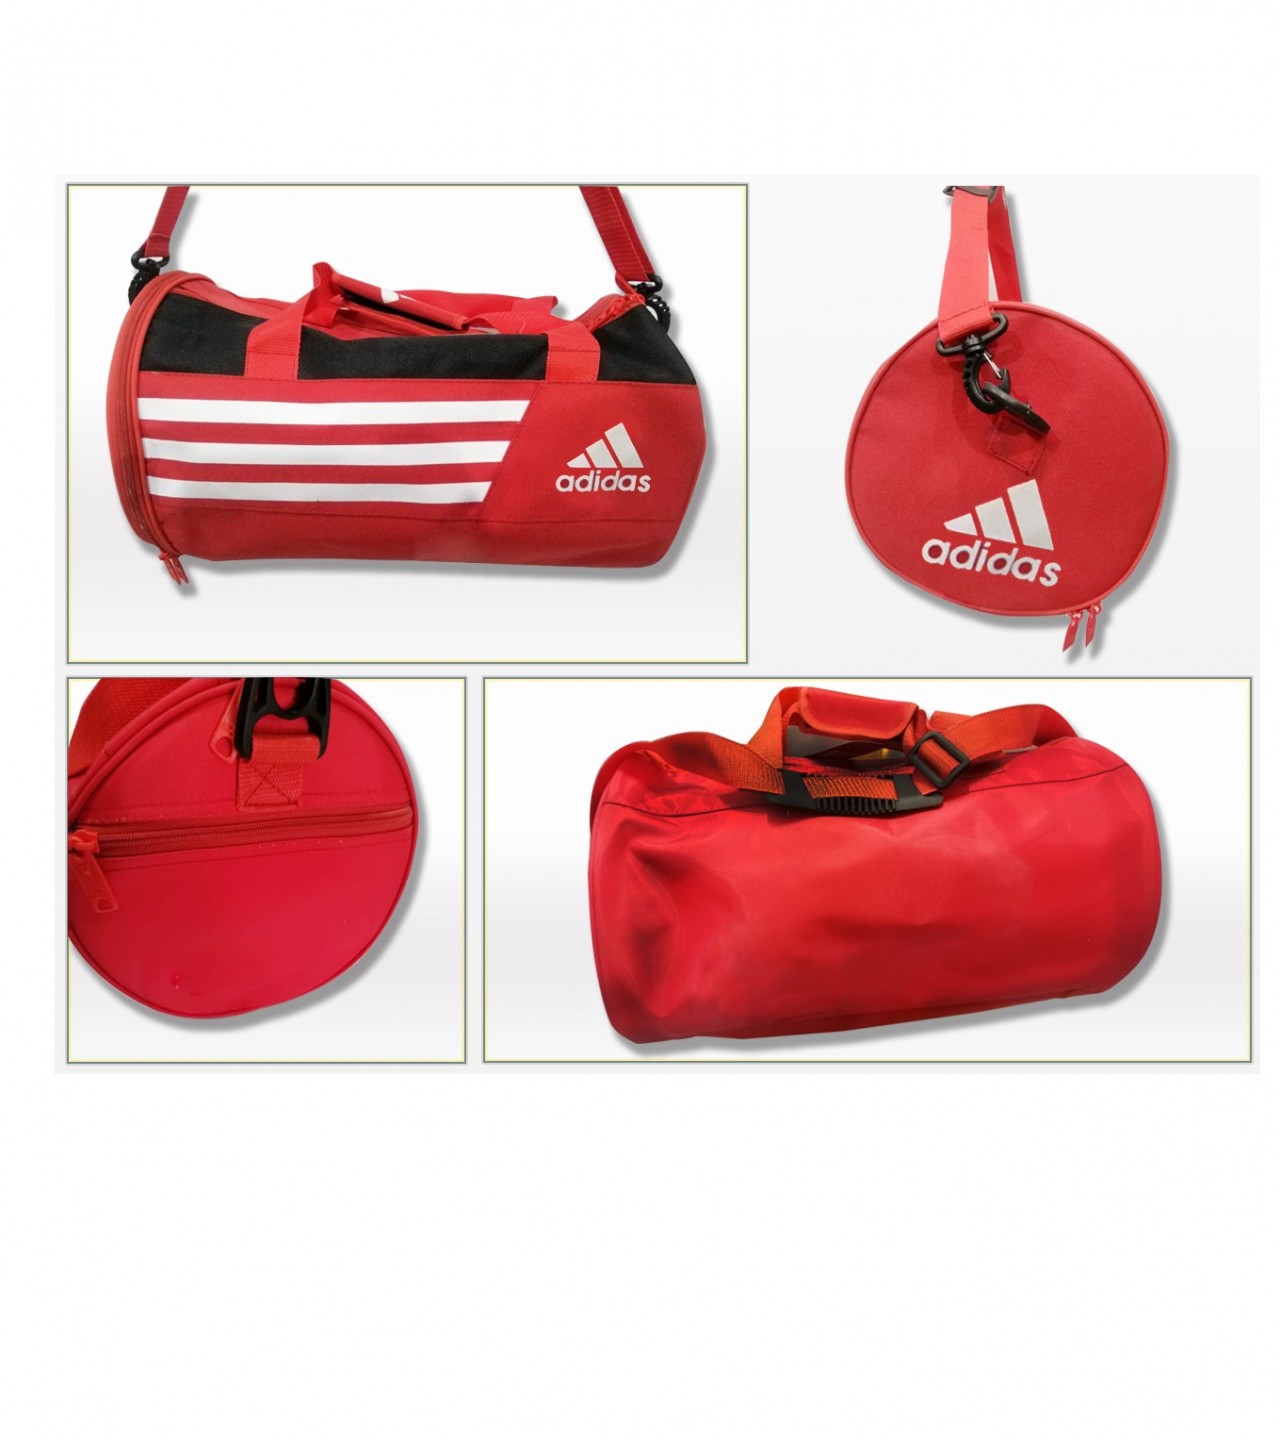 adidas Gym Bag Multi uses for Swimming &Travel Gym bag